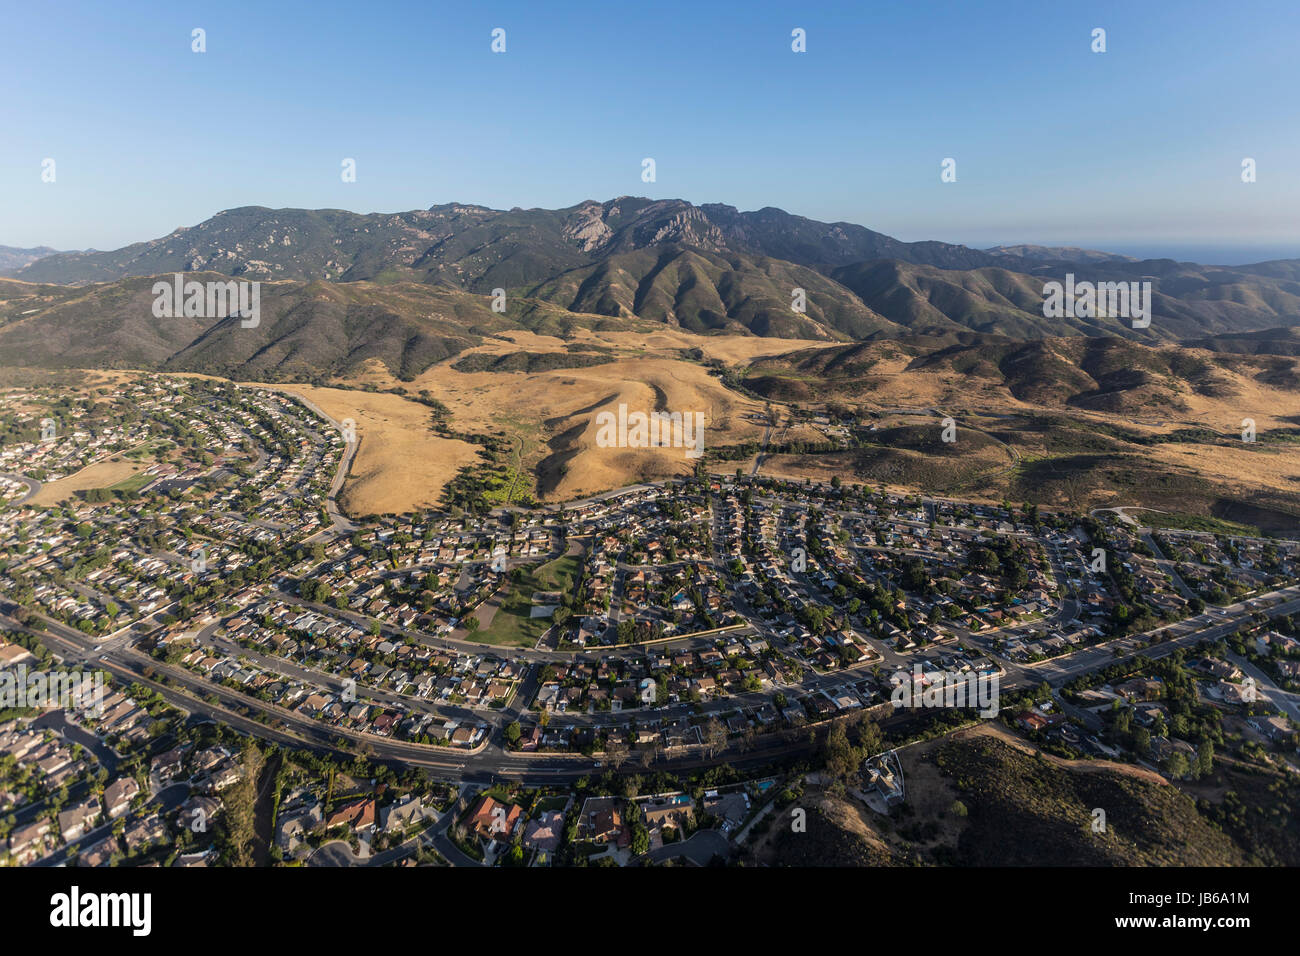 Luftaufnahme von Boney m, Santa Monica Mountains National Recreation Area und Newbury Park Nachbarschaften in Ventura County in Kalifornien. Stockfoto